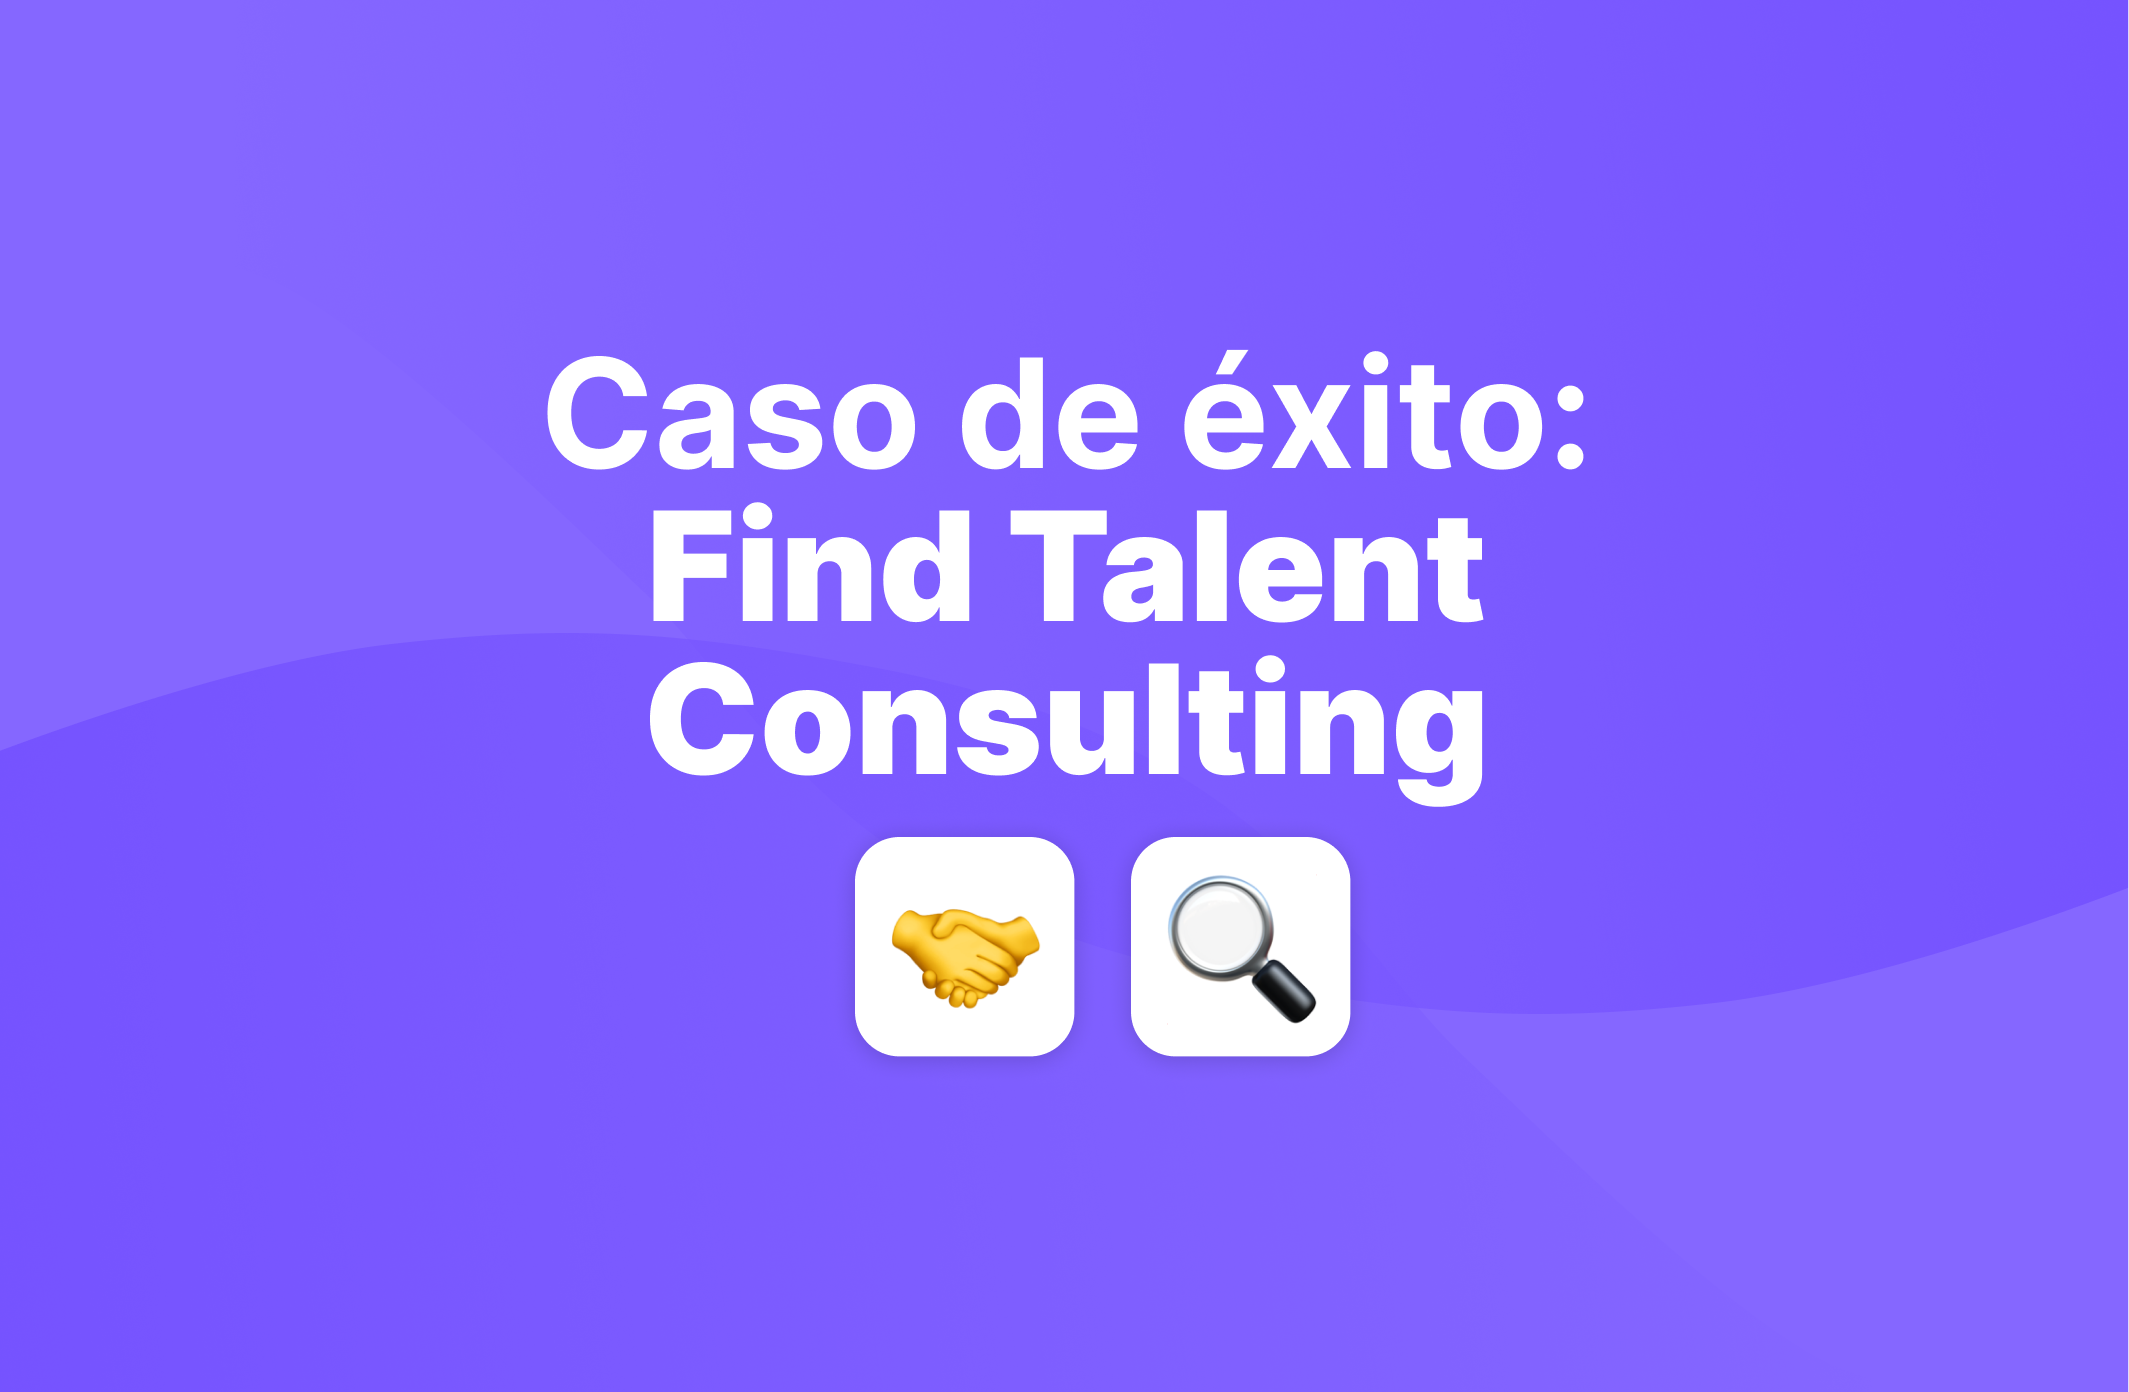 Descubre cómo Find Talent Consulting agiliza sus procesos de RRHH